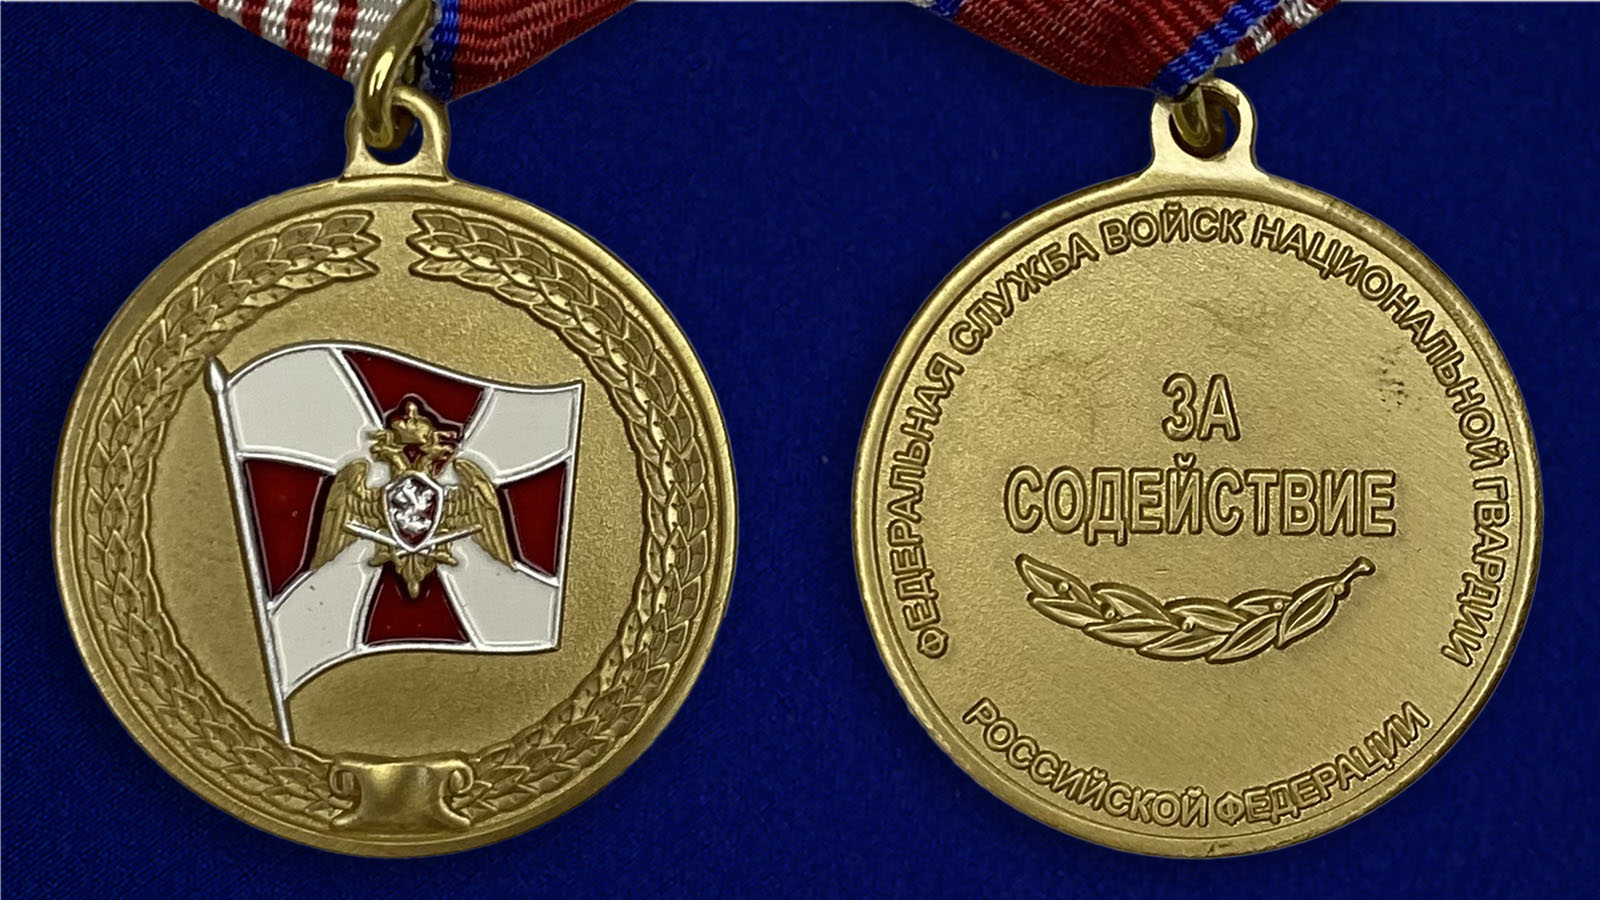 Заказать медаль Росгвардии "За содействие" в военторге Военпро